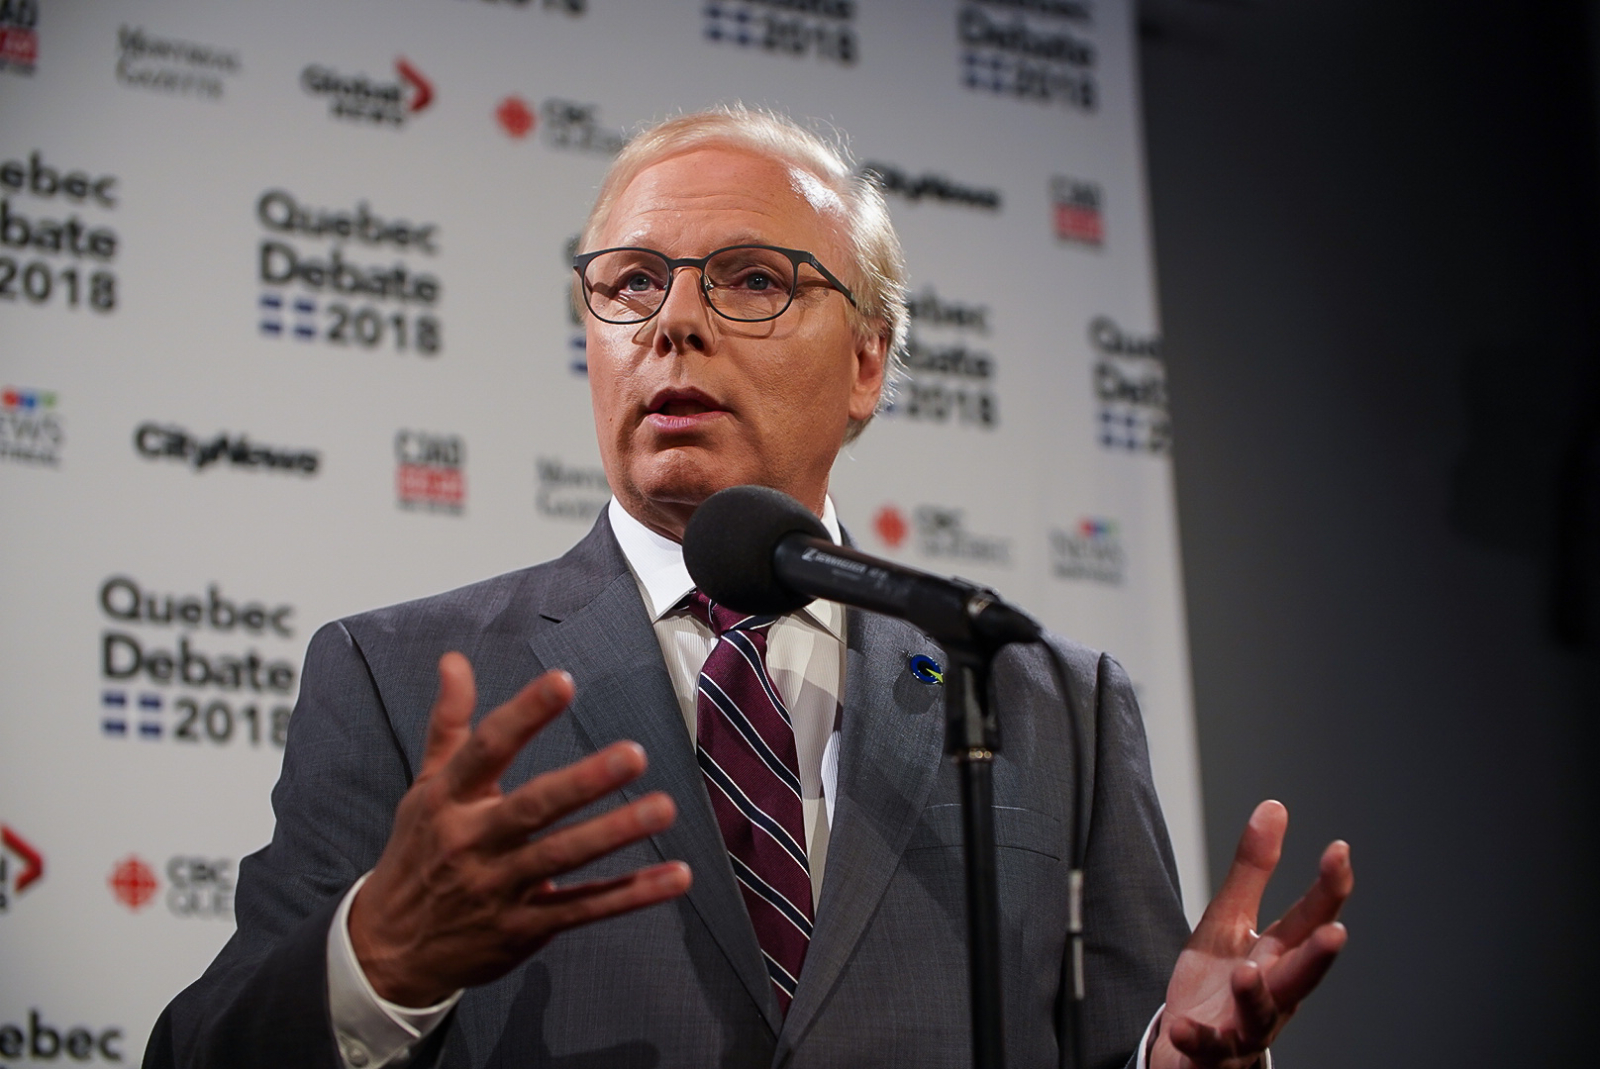 Jean-François Lisée, Parti Quebecois, Quebec debate, Quebec election